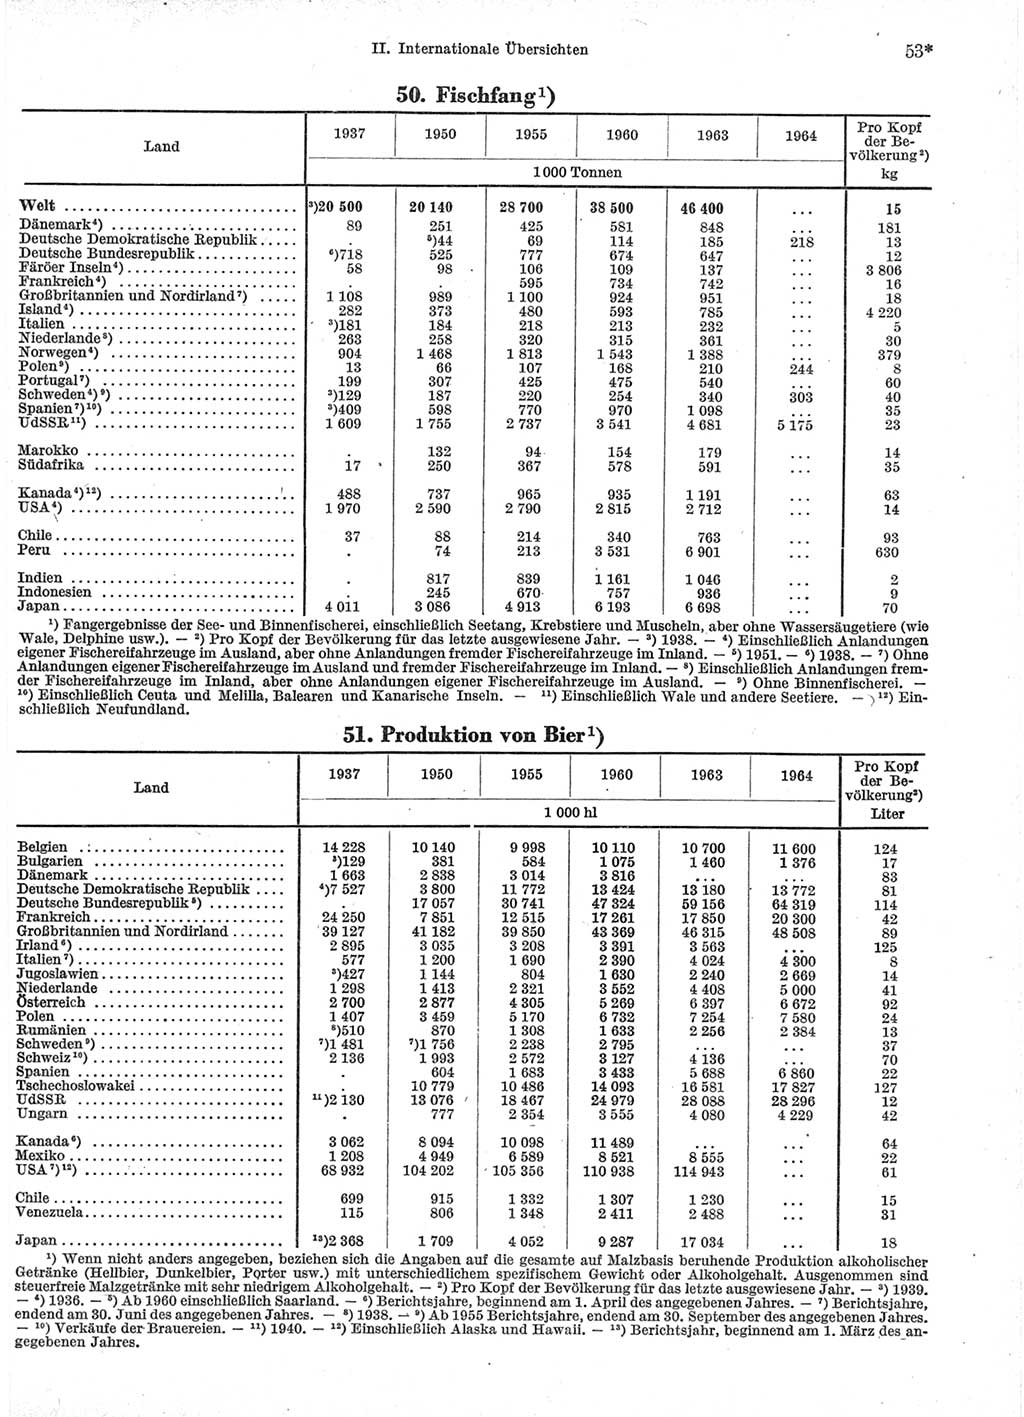 Statistisches Jahrbuch der Deutschen Demokratischen Republik (DDR) 1966, Seite 53 (Stat. Jb. DDR 1966, S. 53)